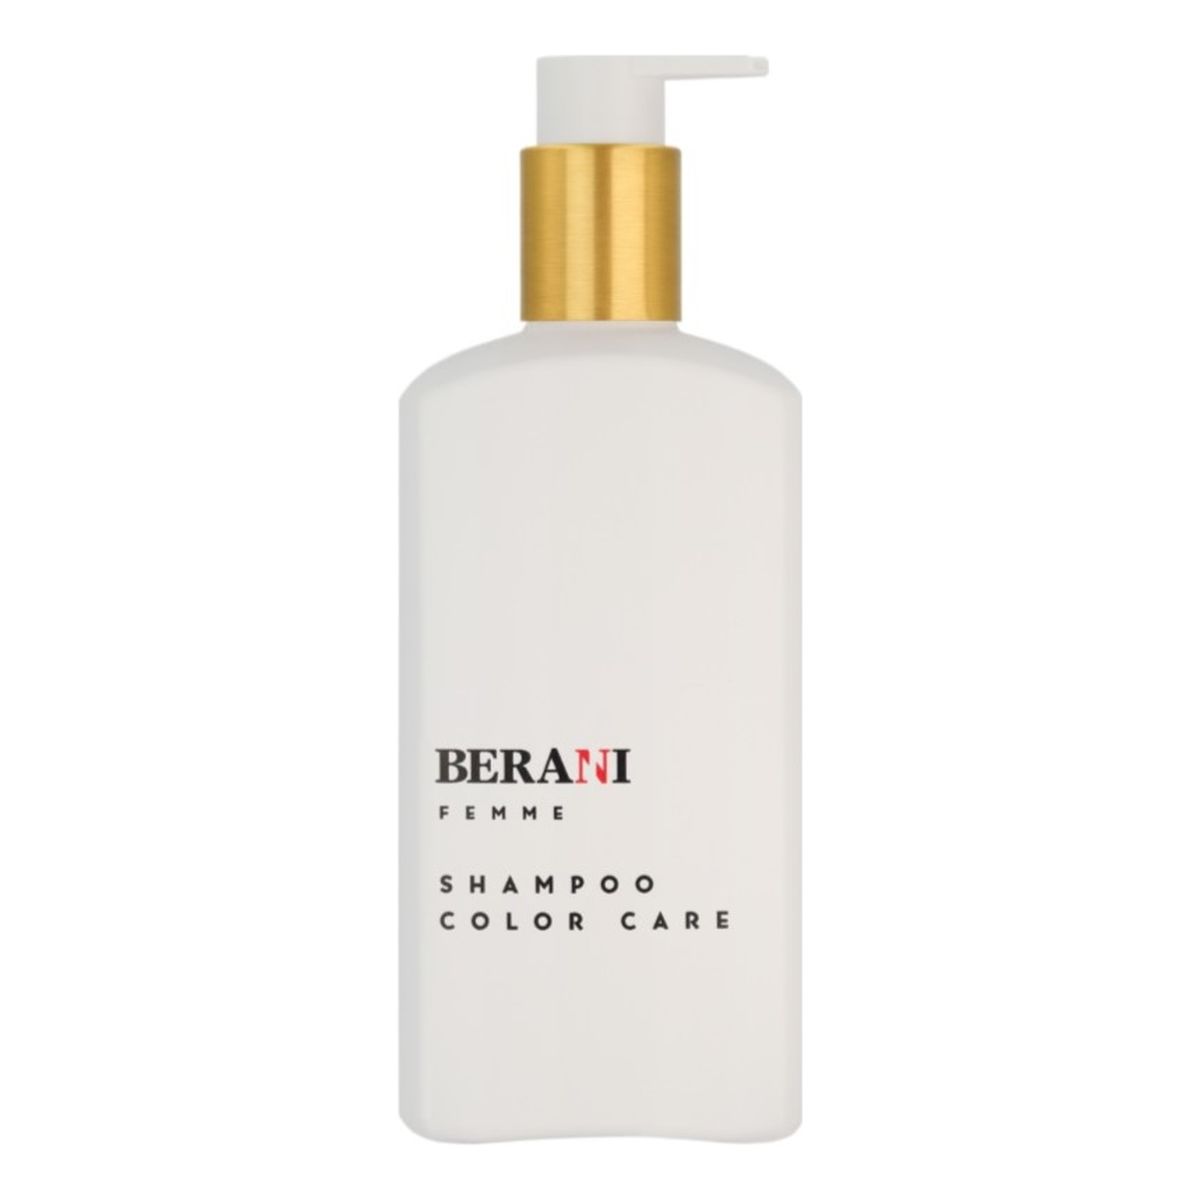 Berani Femme shampoo color care szampon do włosów farbowanych dla kobiet 300ml